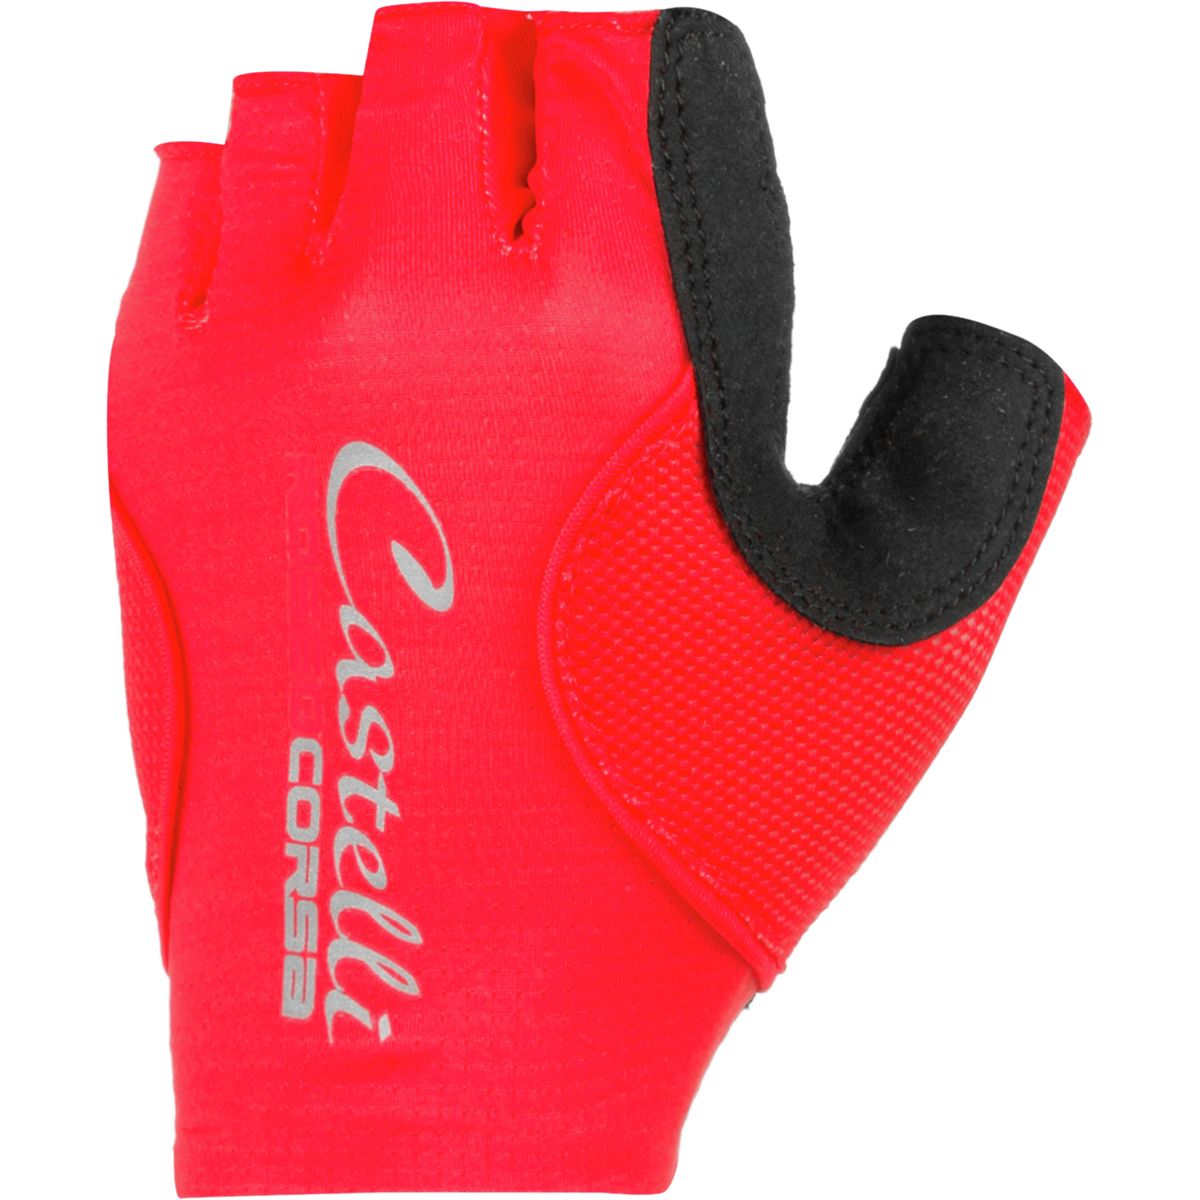 Castelli Rosso Corsa Pave Glove - Women's